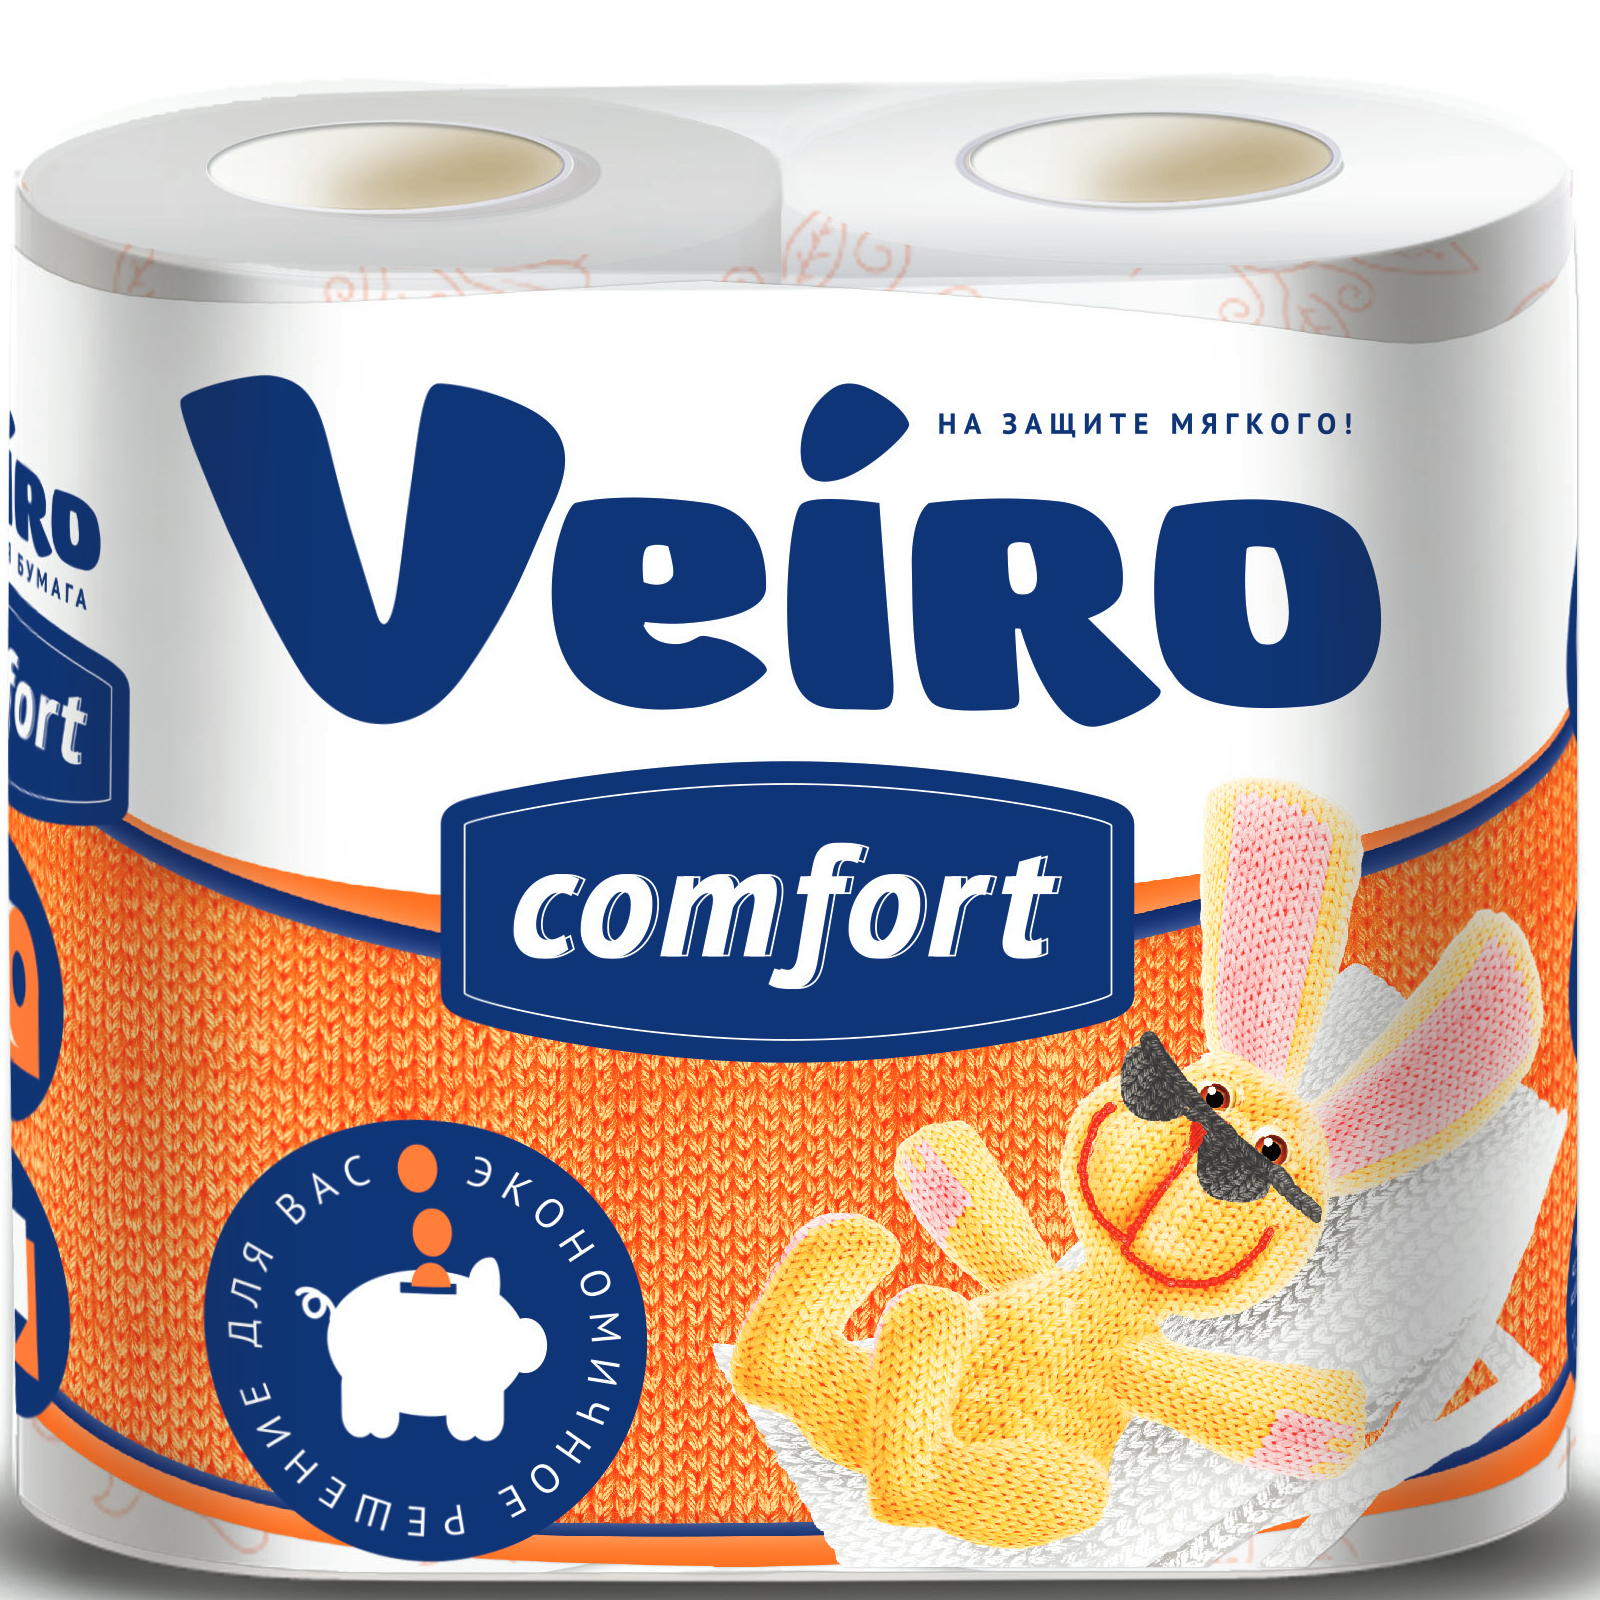 Бумага туалетная Linia Veiro comfort 2 слоя, 4 рулона, 17,5 м туалетная бумага veiro 3 слоя 12 шт 17 м с втулкой